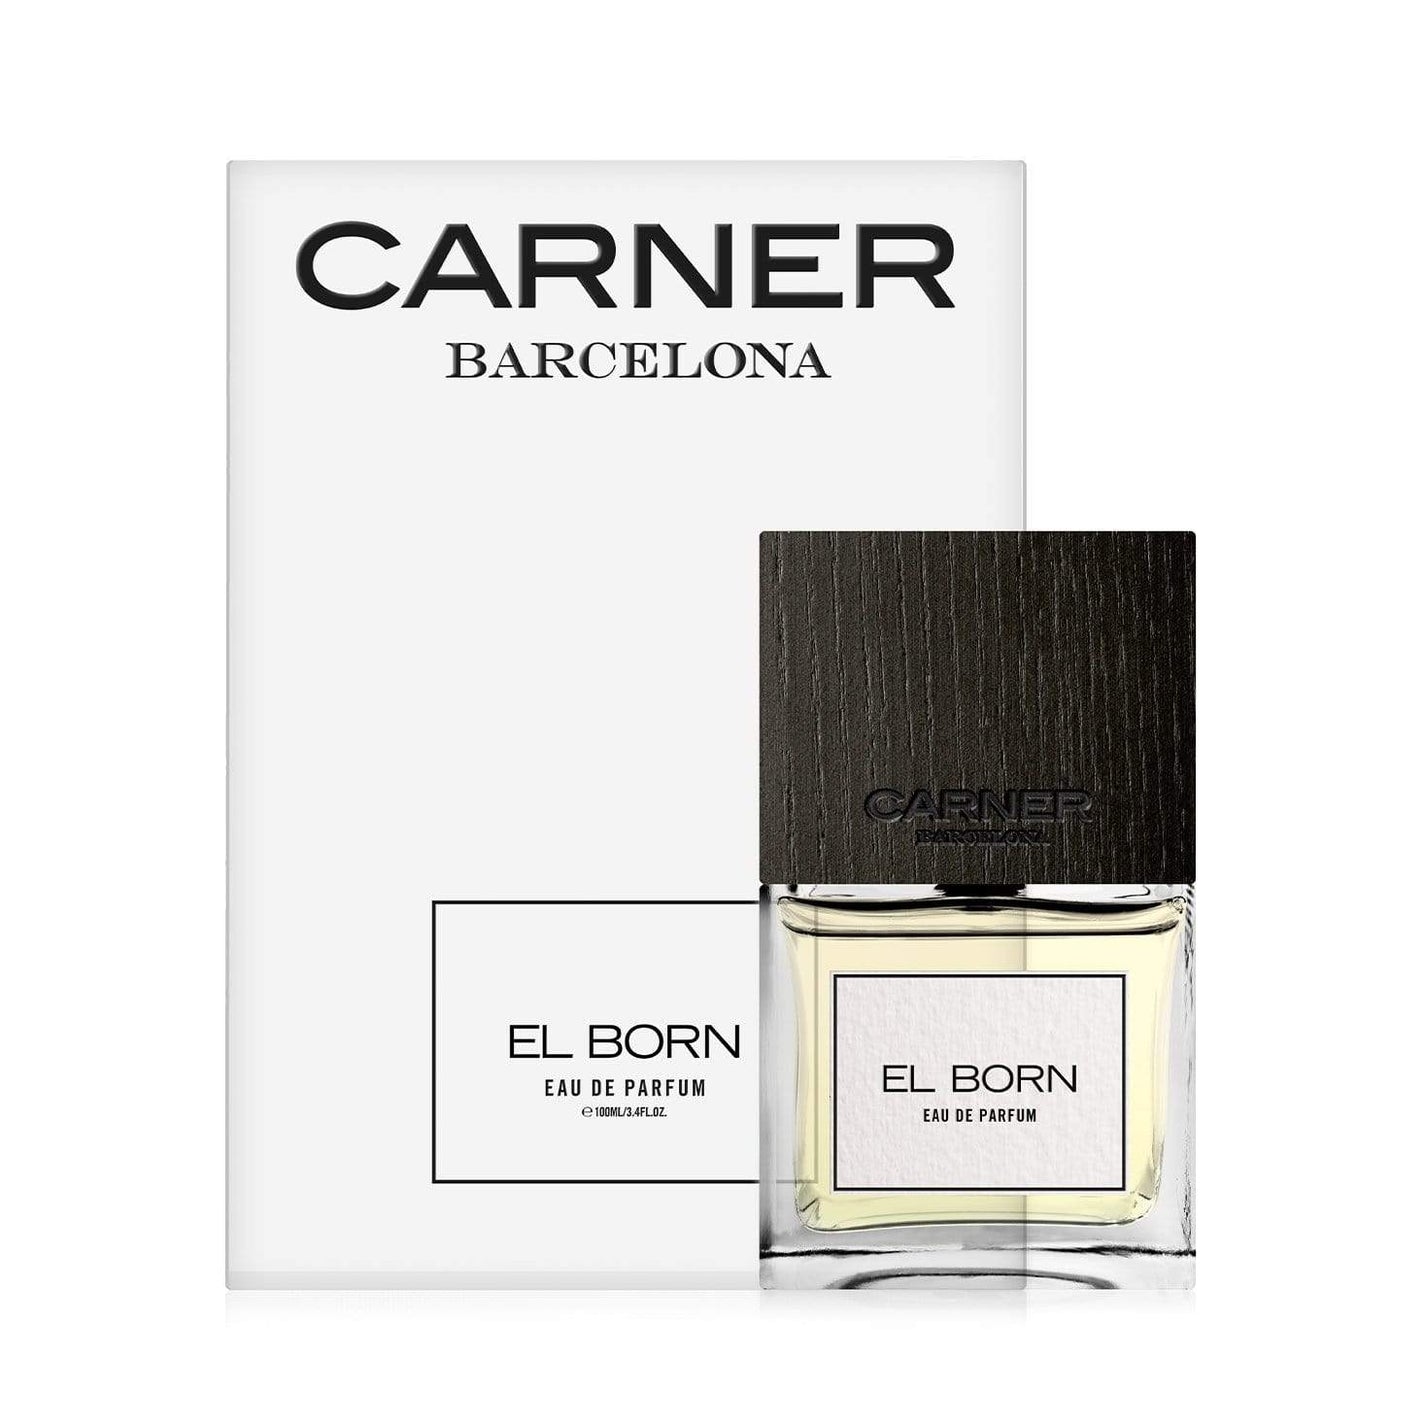 CARNER BARCELONA El Born Eau de Parfum - 50ml